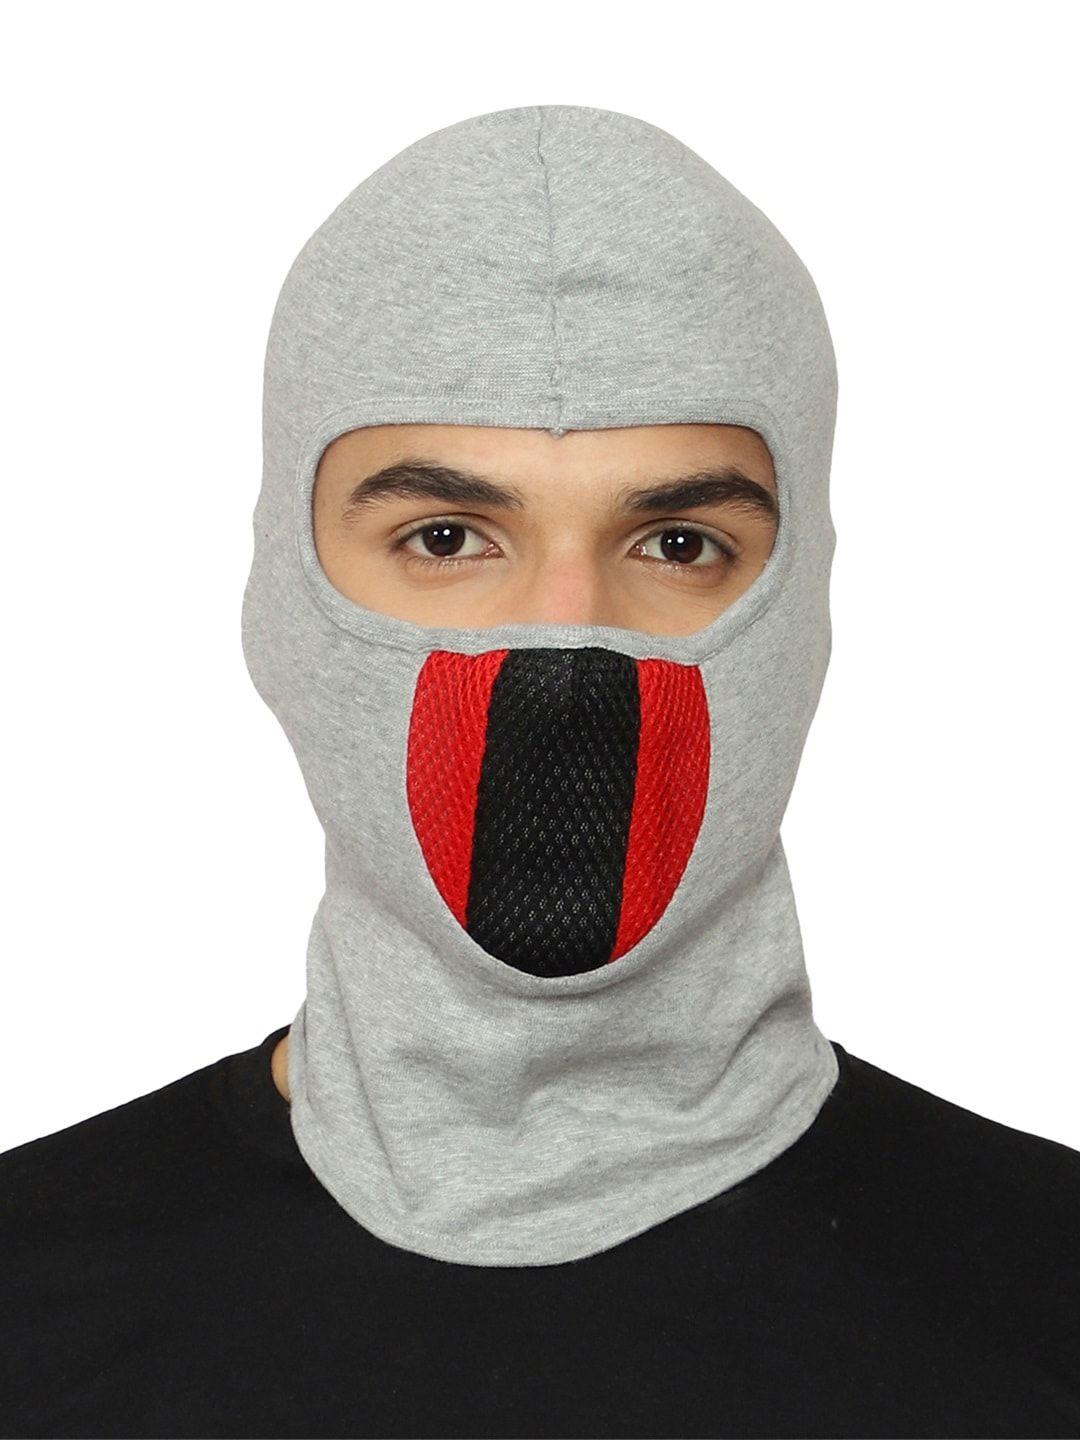 gajraj reusable balaclava face mask with air filter mesh